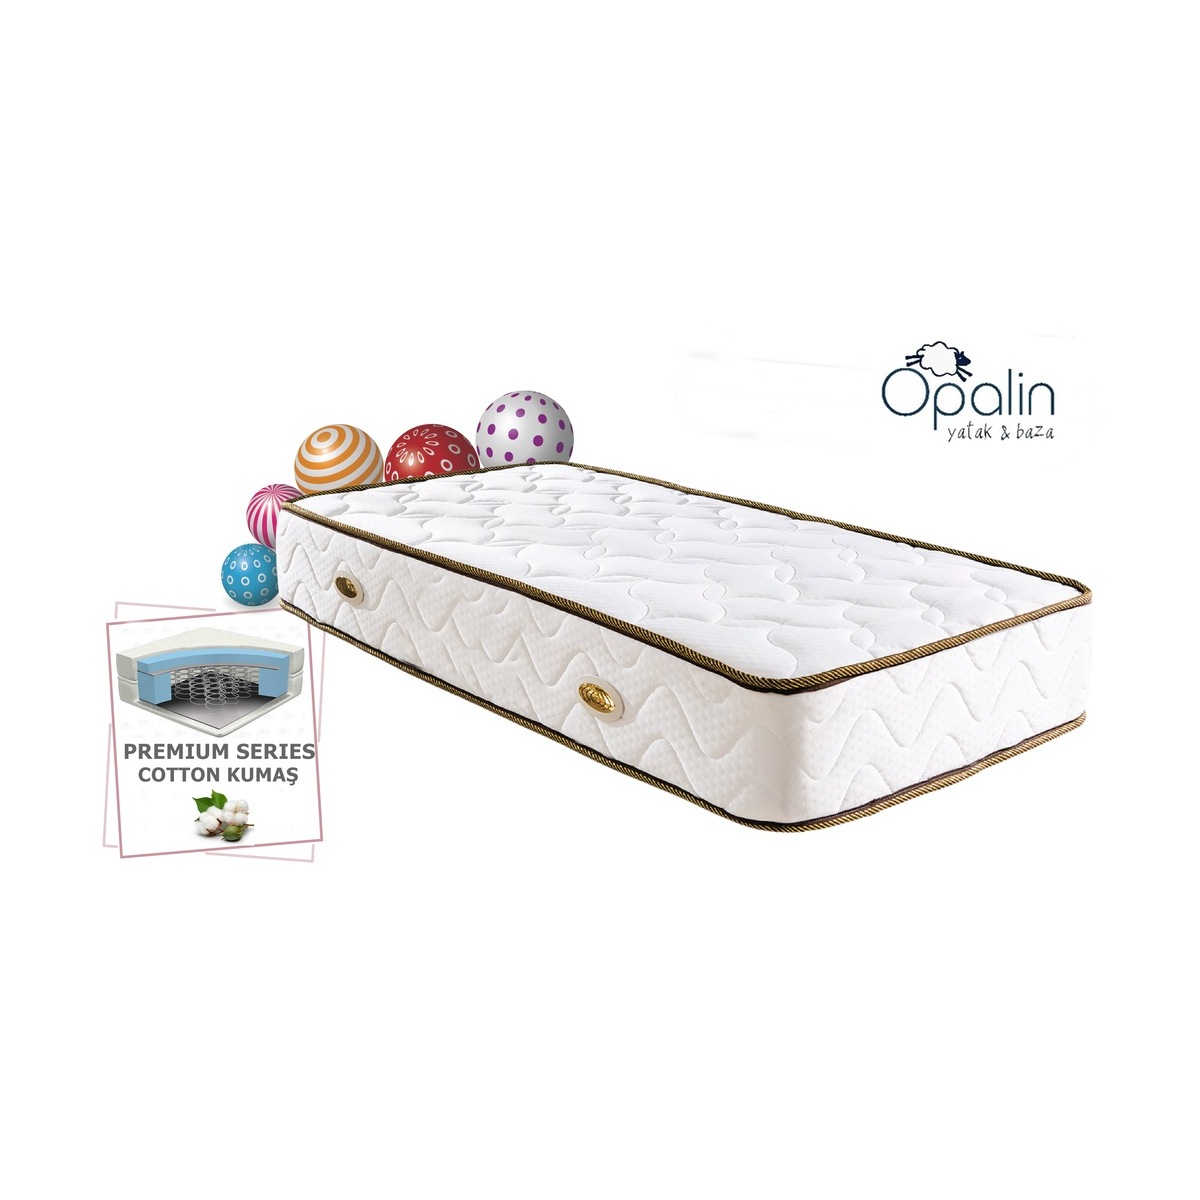 Onlıne-Yatak 60X160 Opalin Cotton Ortopedik Yaylı Yatak 60X160 Yaylı Yatak